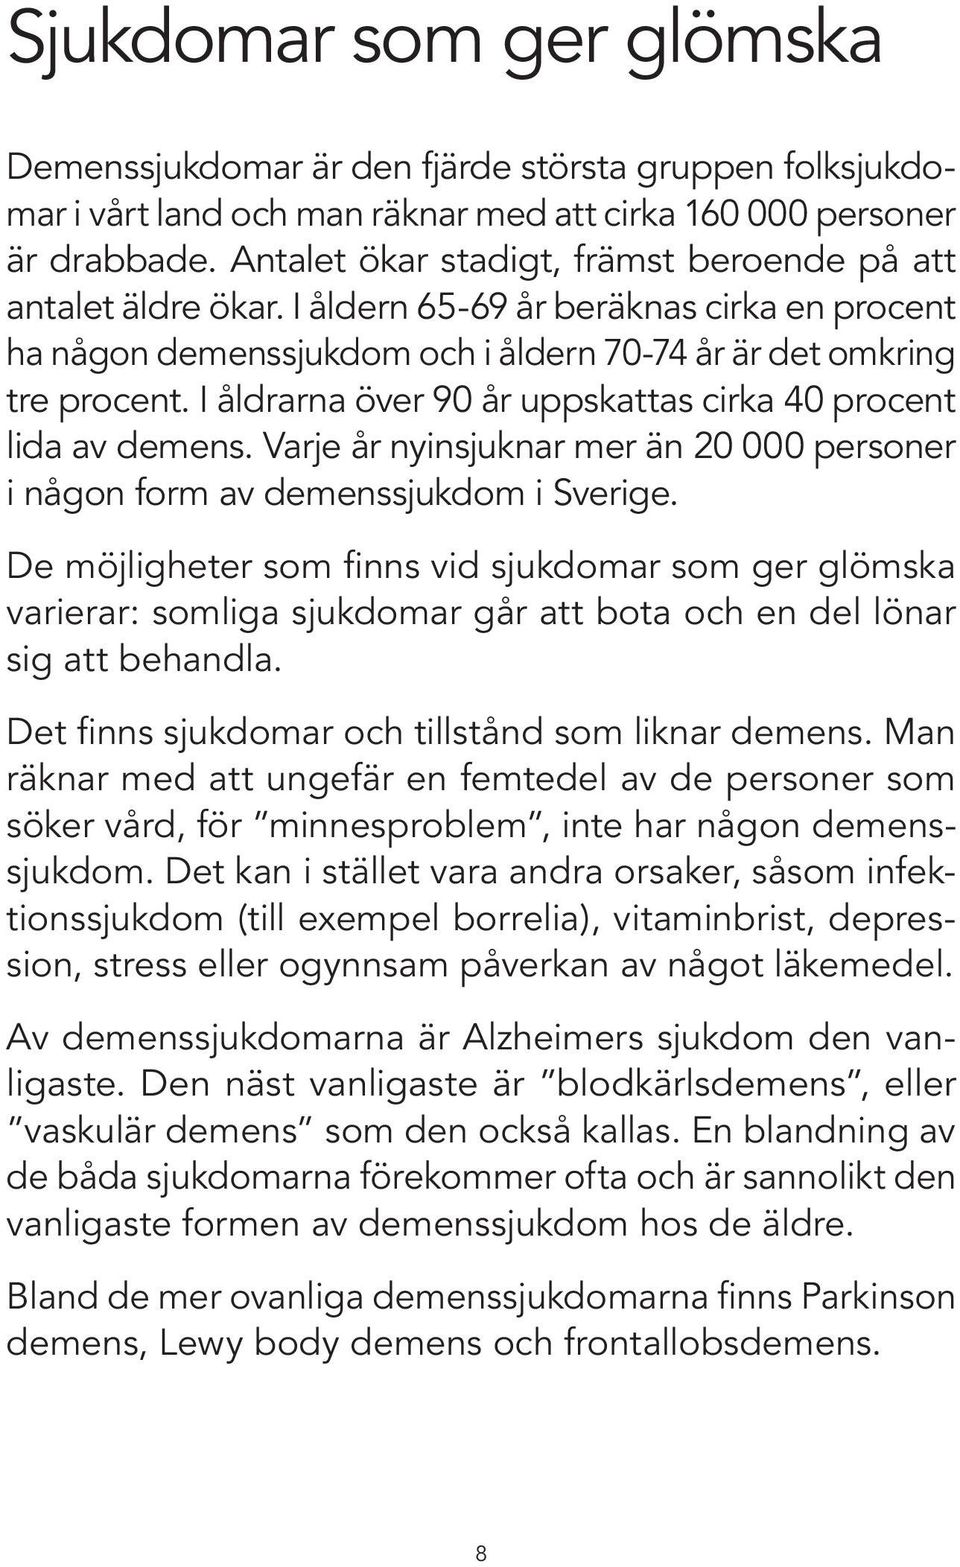 I åldrarna över 90 år uppskattas cirka 40 procent lida av demens. Varje år nyinsjuknar mer än 20 000 personer i någon form av demenssjukdom i Sverige.